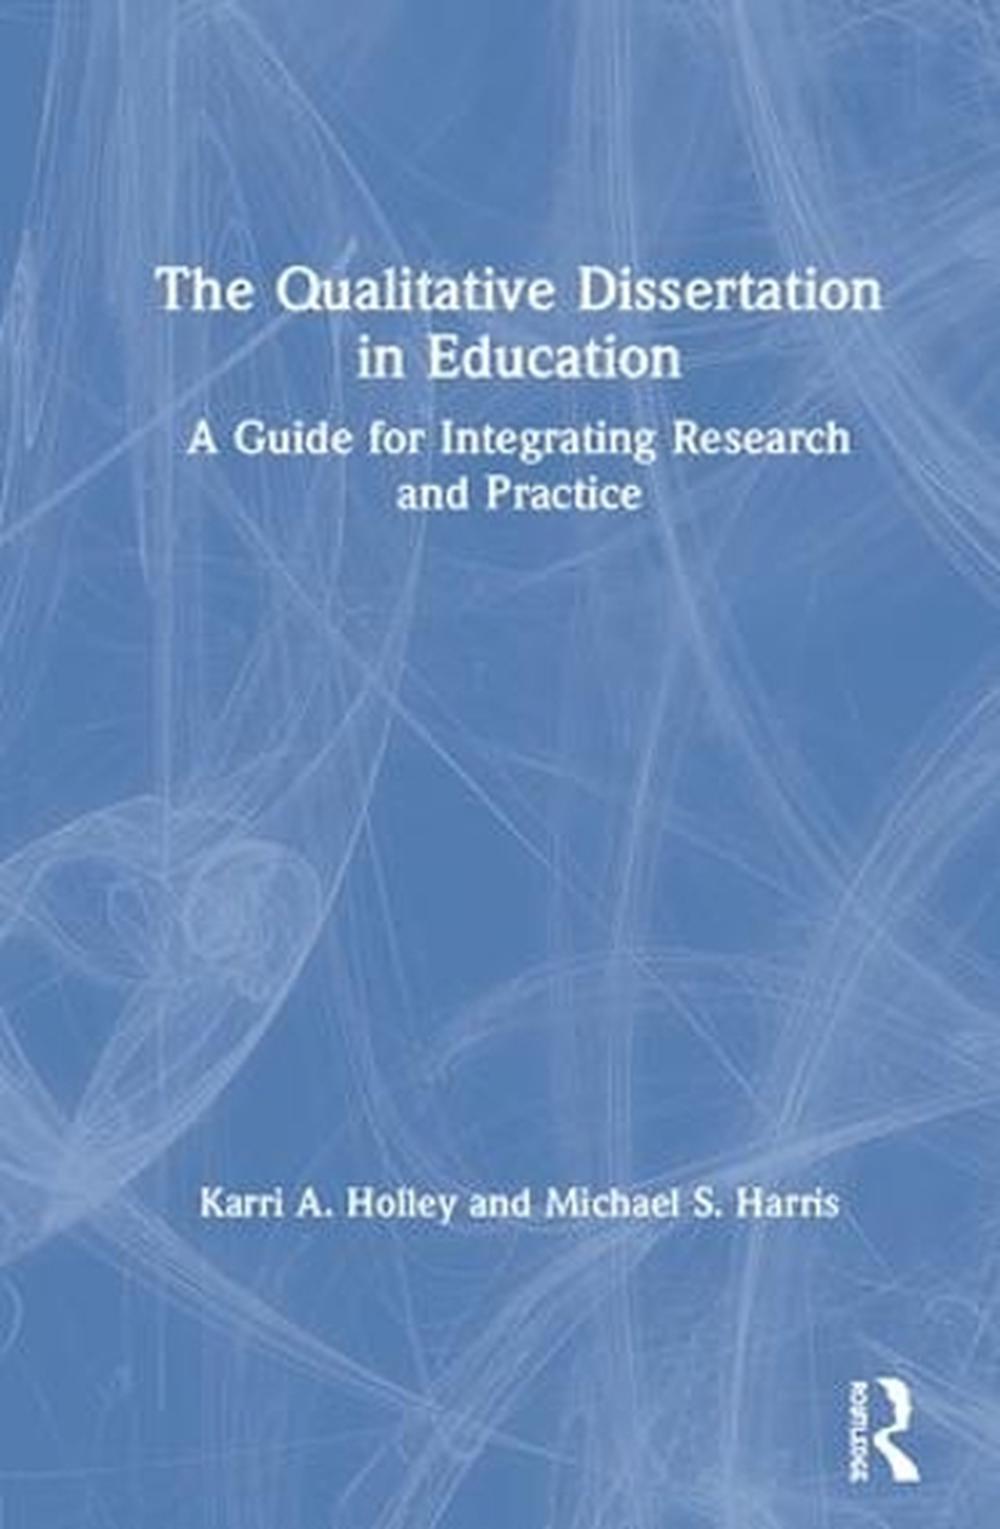 laerd qualitative dissertation